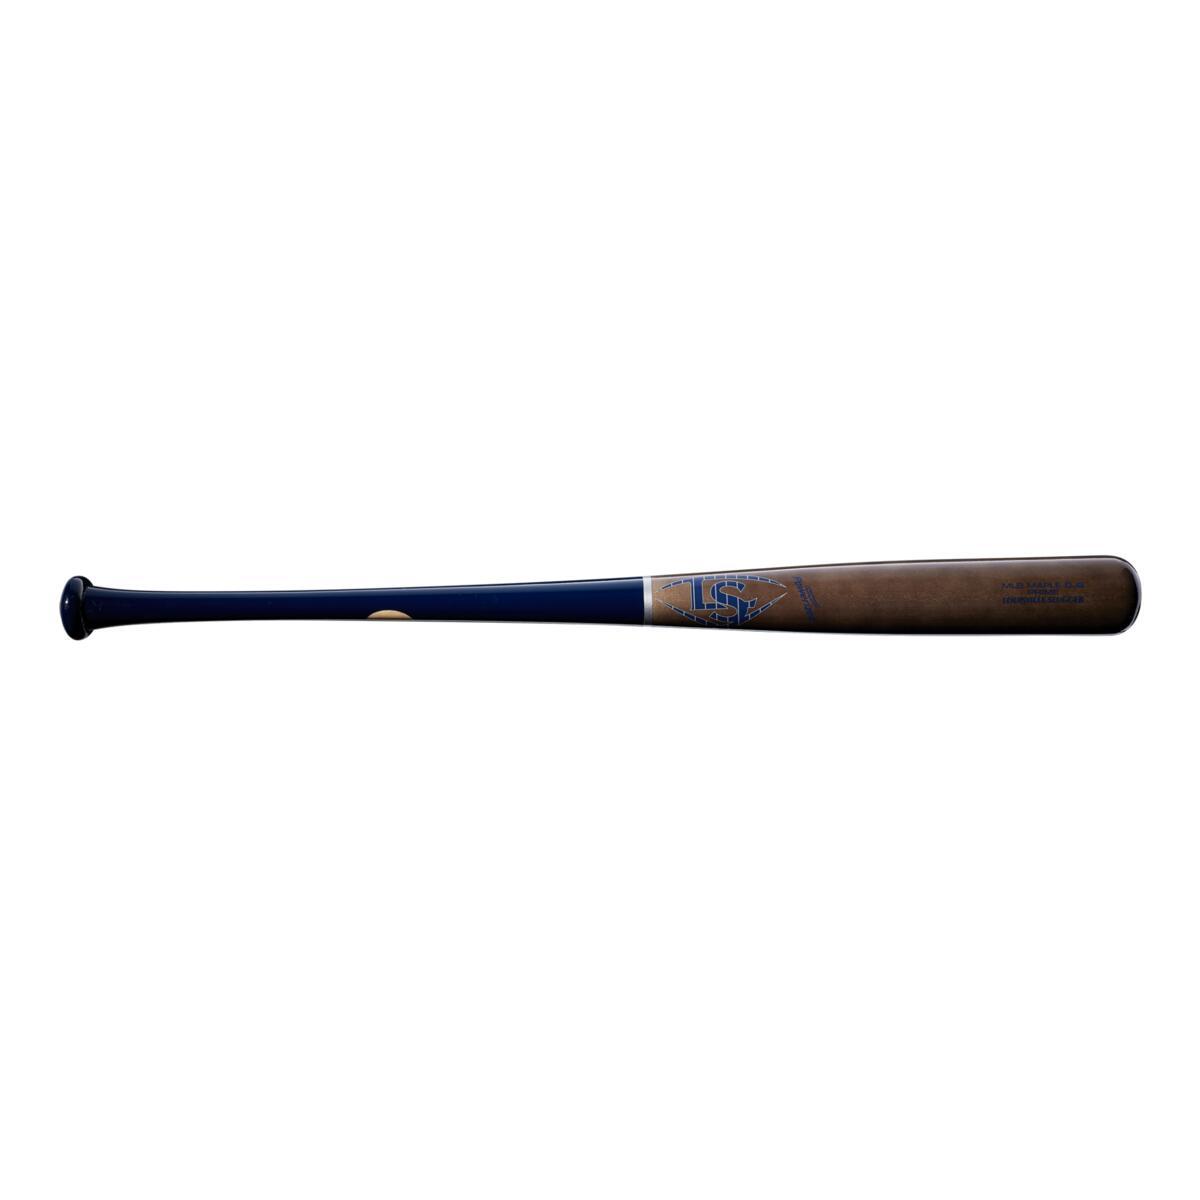 Kolder MLB Team Logo Baseball Woody Bat Can Cooler Holder - 2-Pack